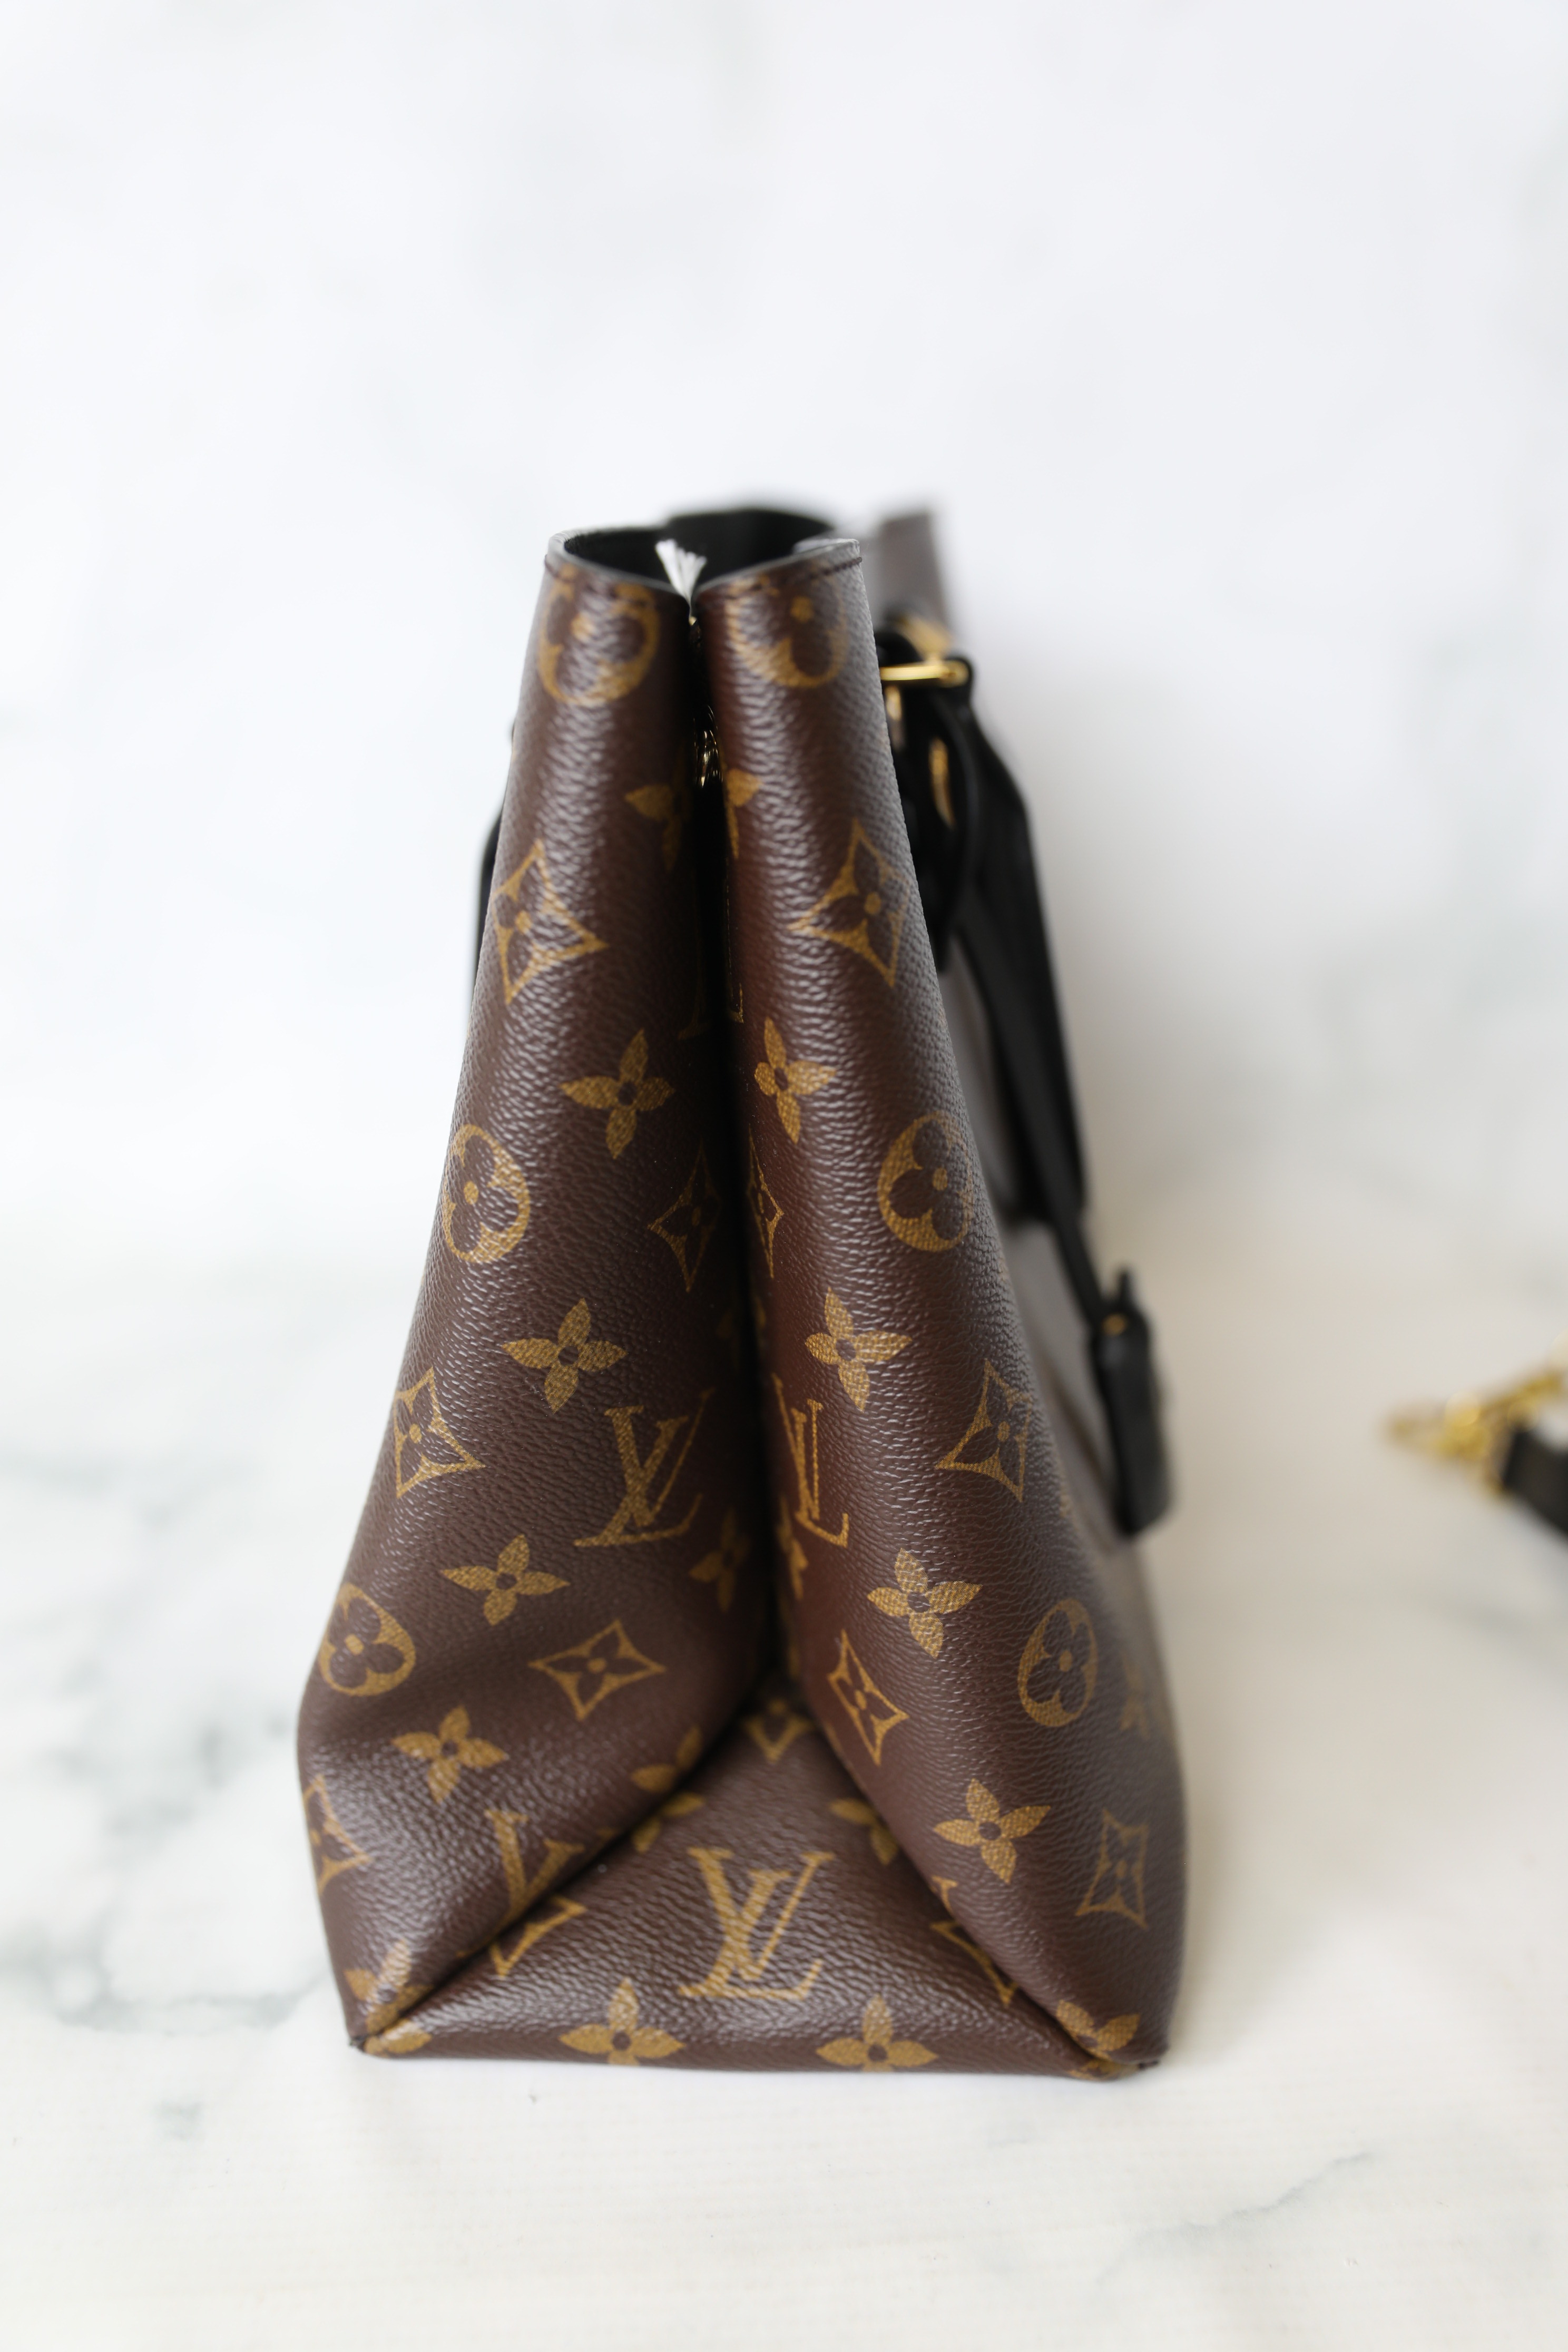 Túi xách LV Louis Vuitton Flower Tote siêu cấp Monogram quai nâu size 34cm  – M43770 – Túi xách cao cấp, những mẫu túi siêu cấp, like authentic cực đẹp